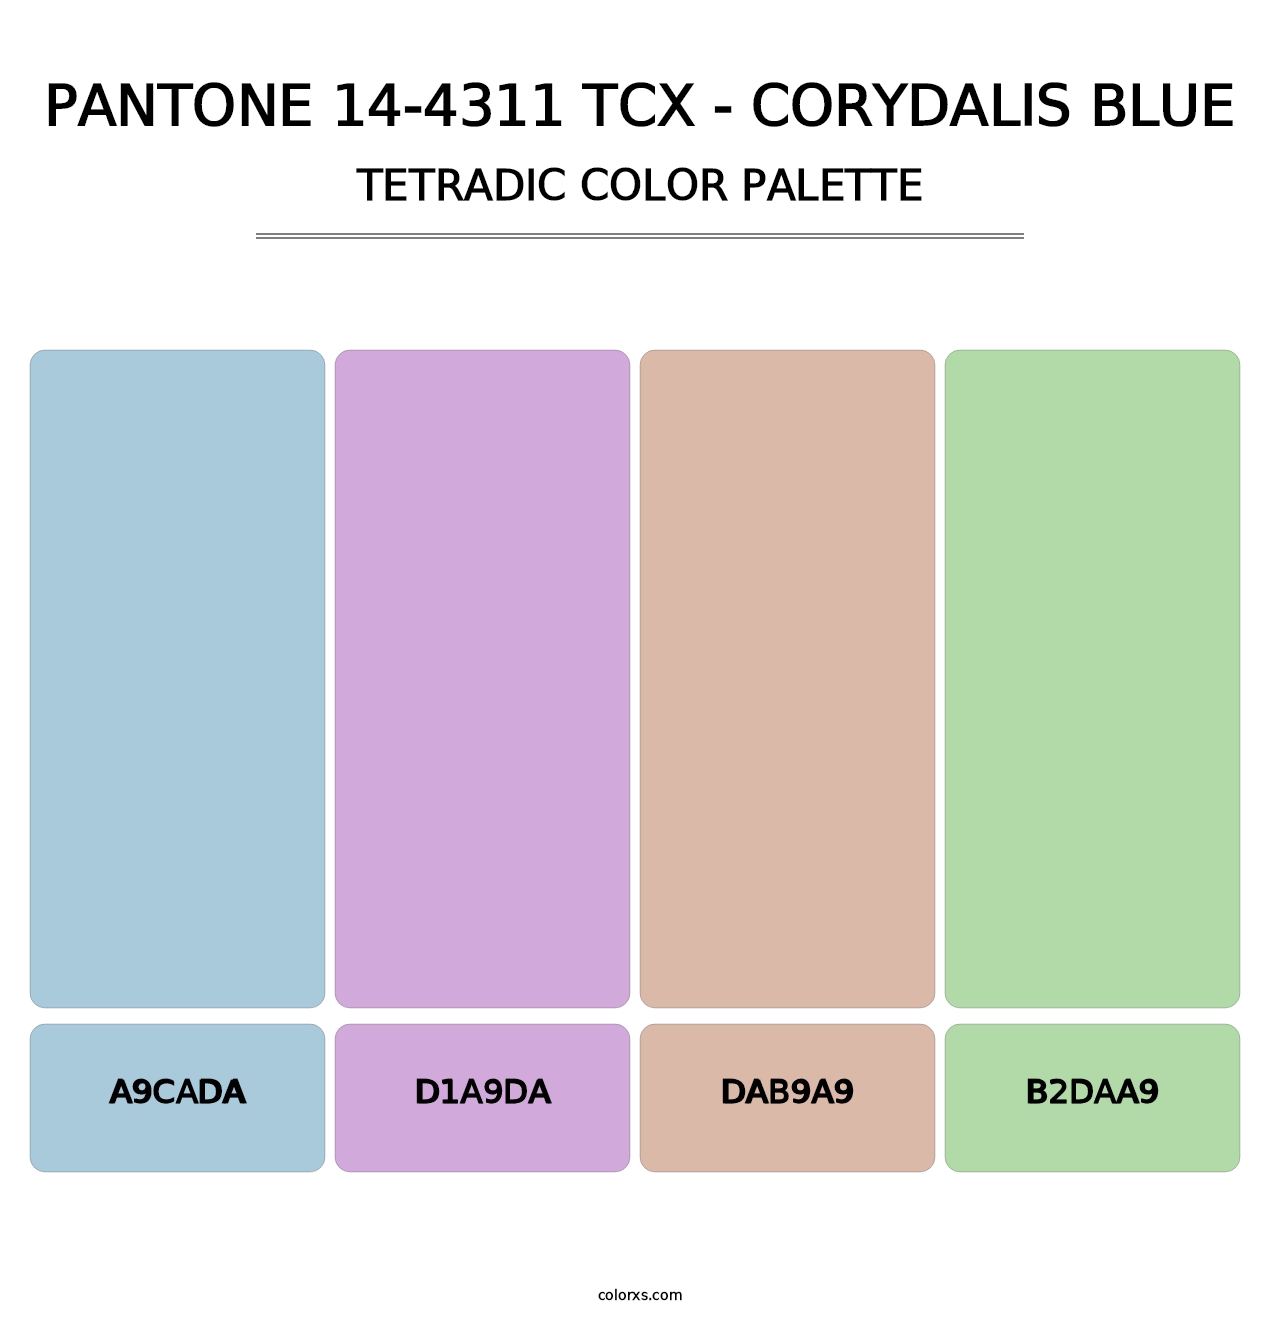 PANTONE 14-4311 TCX - Corydalis Blue - Tetradic Color Palette